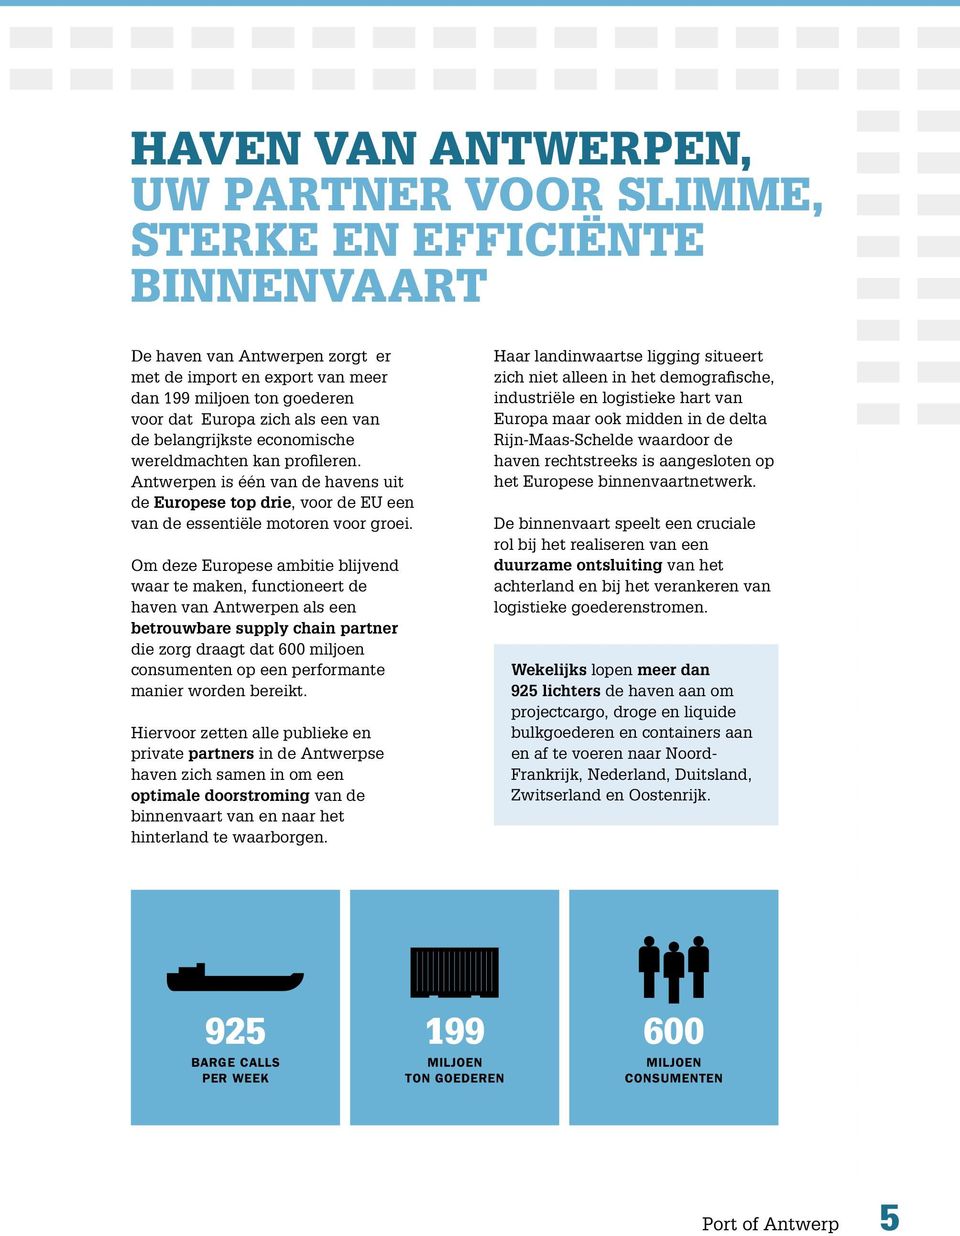 Om deze Europese ambitie blijvend waar te maken, functioneert de haven van Antwerpen als een betrouwbare supply chain partner die zorg draagt dat 600 miljoen consumenten op een performante manier